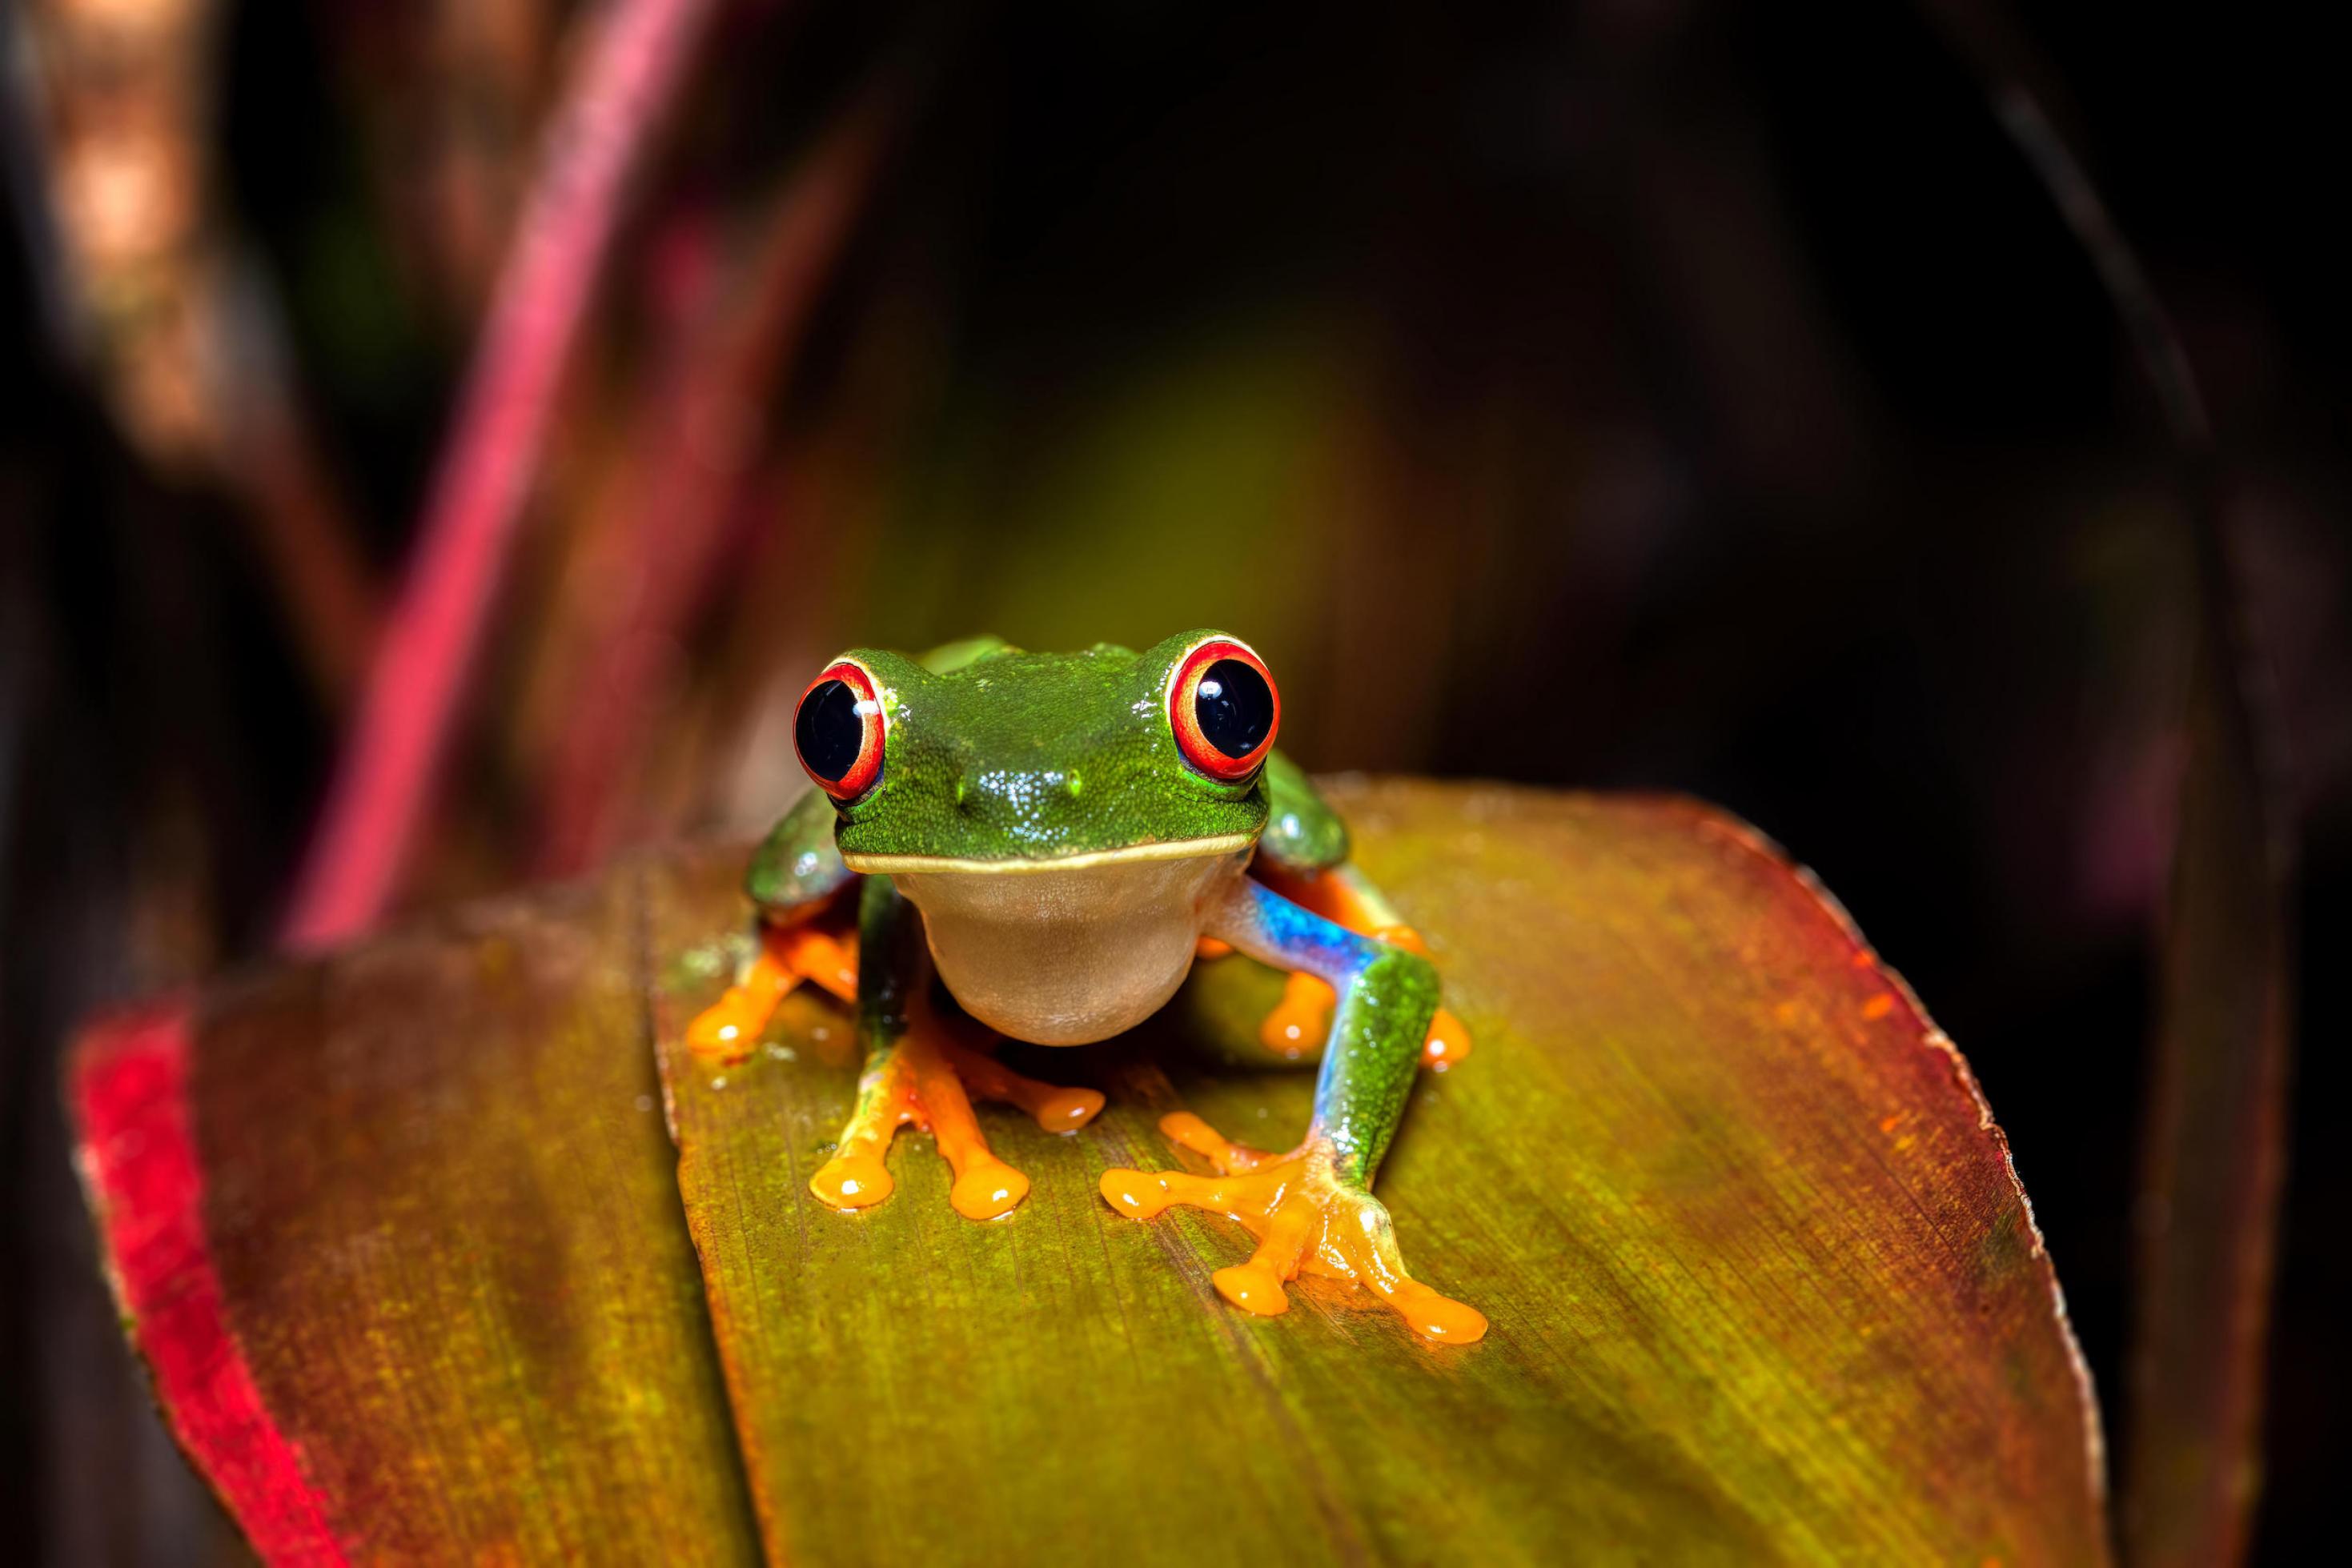 Ein knallgrüner Frosch mit roten Augen auf einem rot-braunen Blatt.